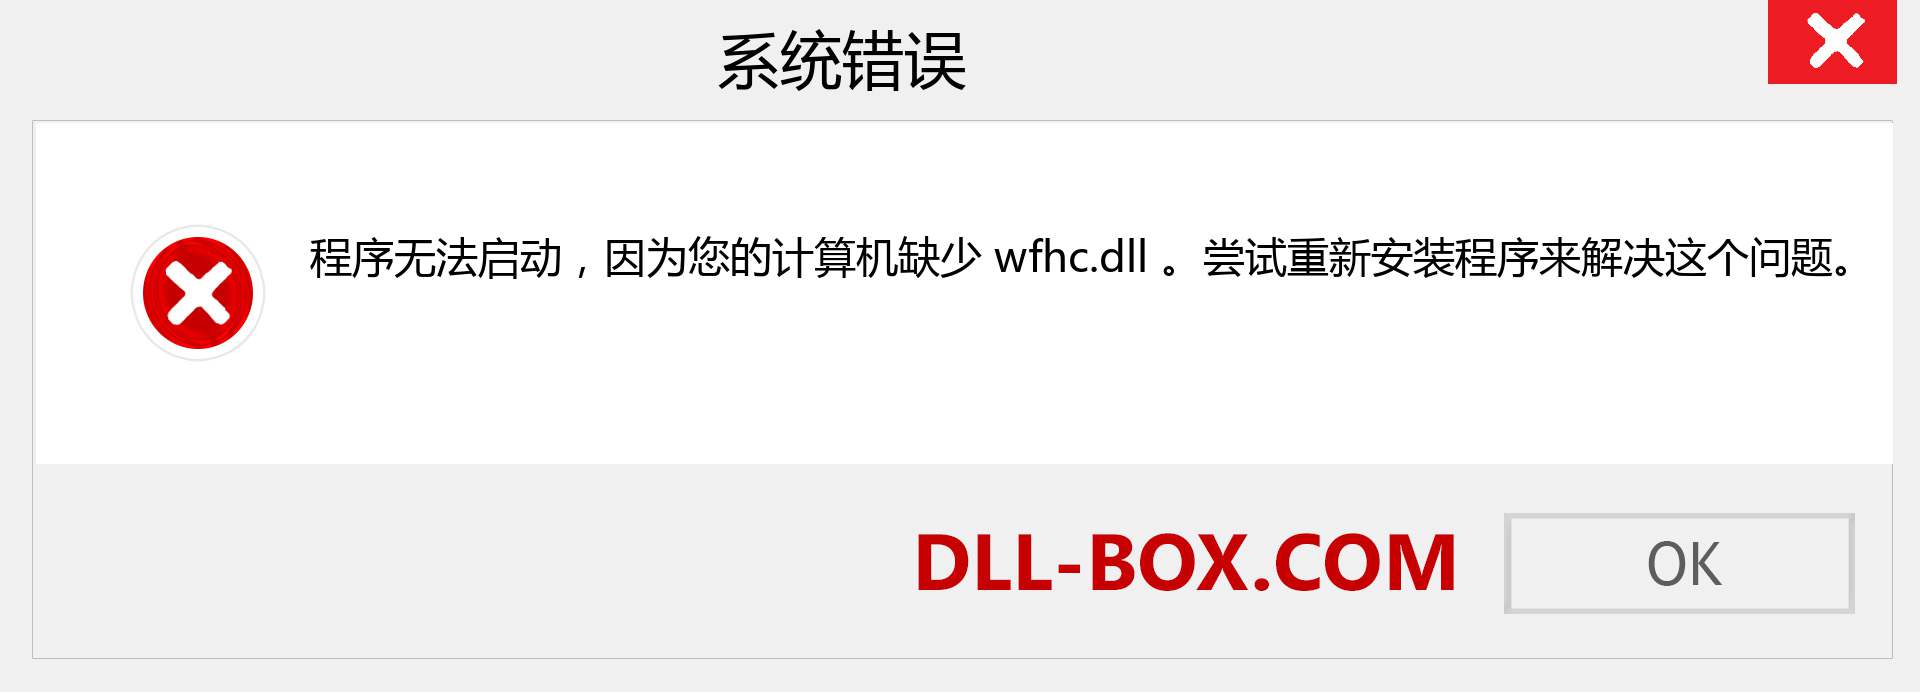 wfhc.dll 文件丢失？。 适用于 Windows 7、8、10 的下载 - 修复 Windows、照片、图像上的 wfhc dll 丢失错误